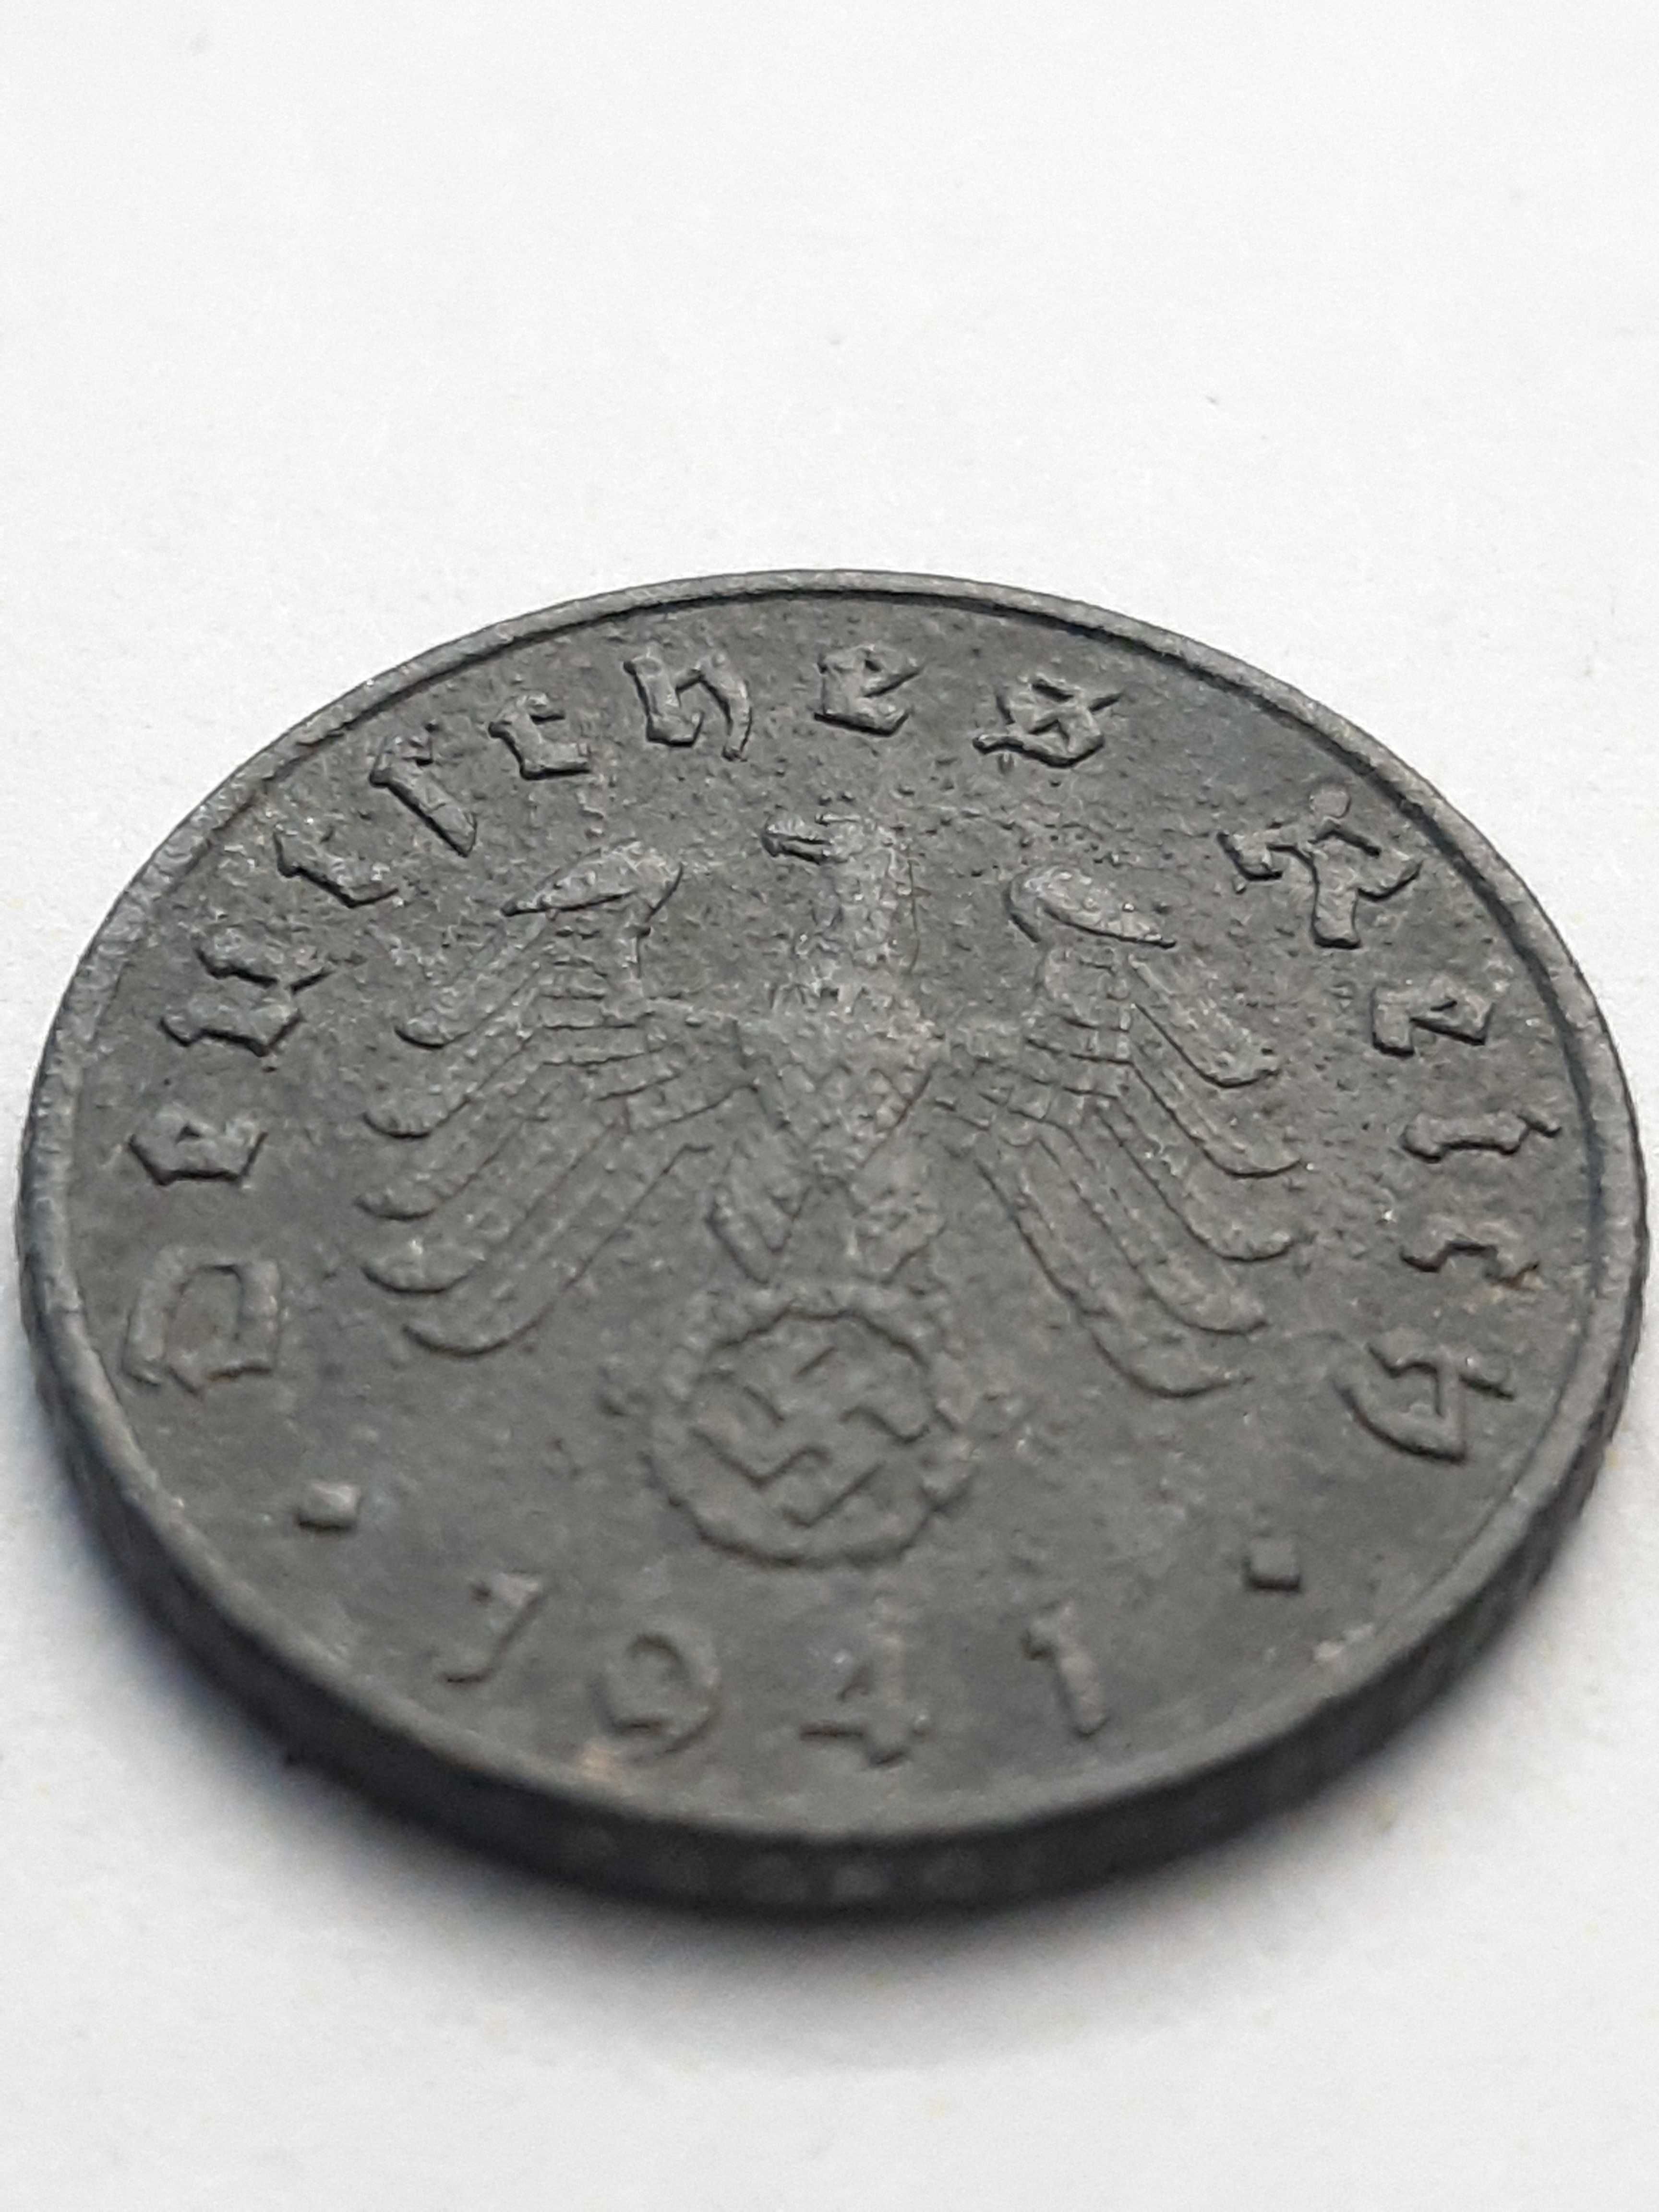 Niemcy III Rzesza 5 fenigów, pfennig 1941 rok mennica G